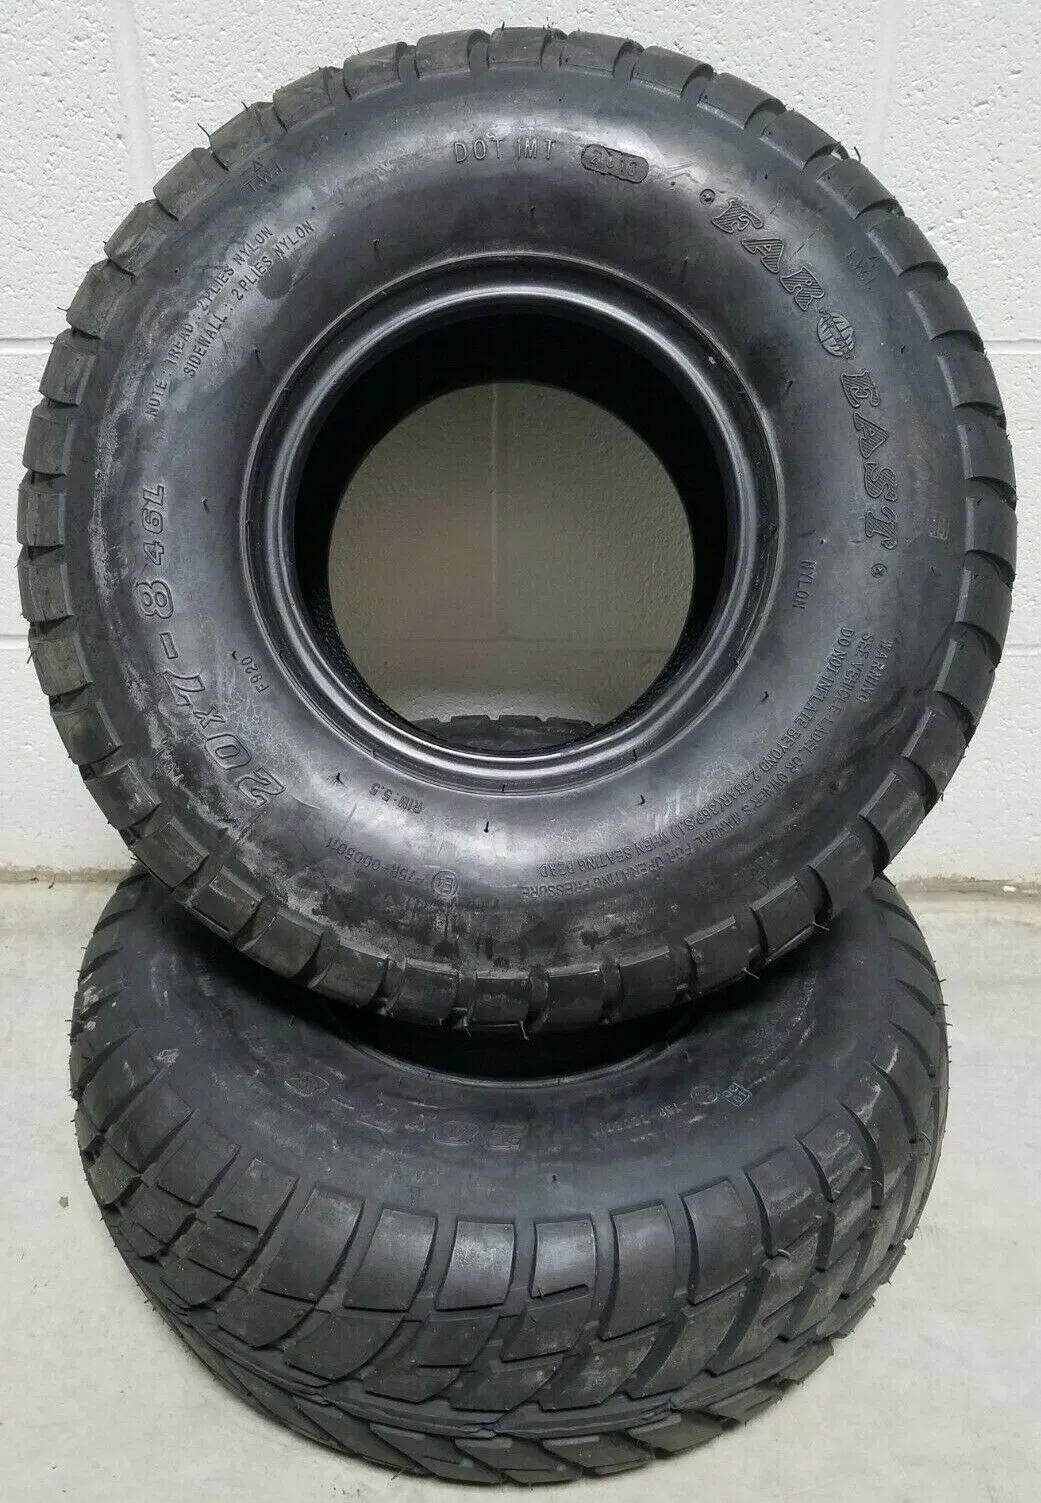 Suntop/Far East brand ATV/UTV Trailer tyres 4pr 6pr F920 tubeless tires 18*9.5-8 19*7-8 3.25-8 4.80-8 5.70-8 4.80/4.00-8 22*11-8(FLAT) 22*11-8(INFLATED) 4.80-12